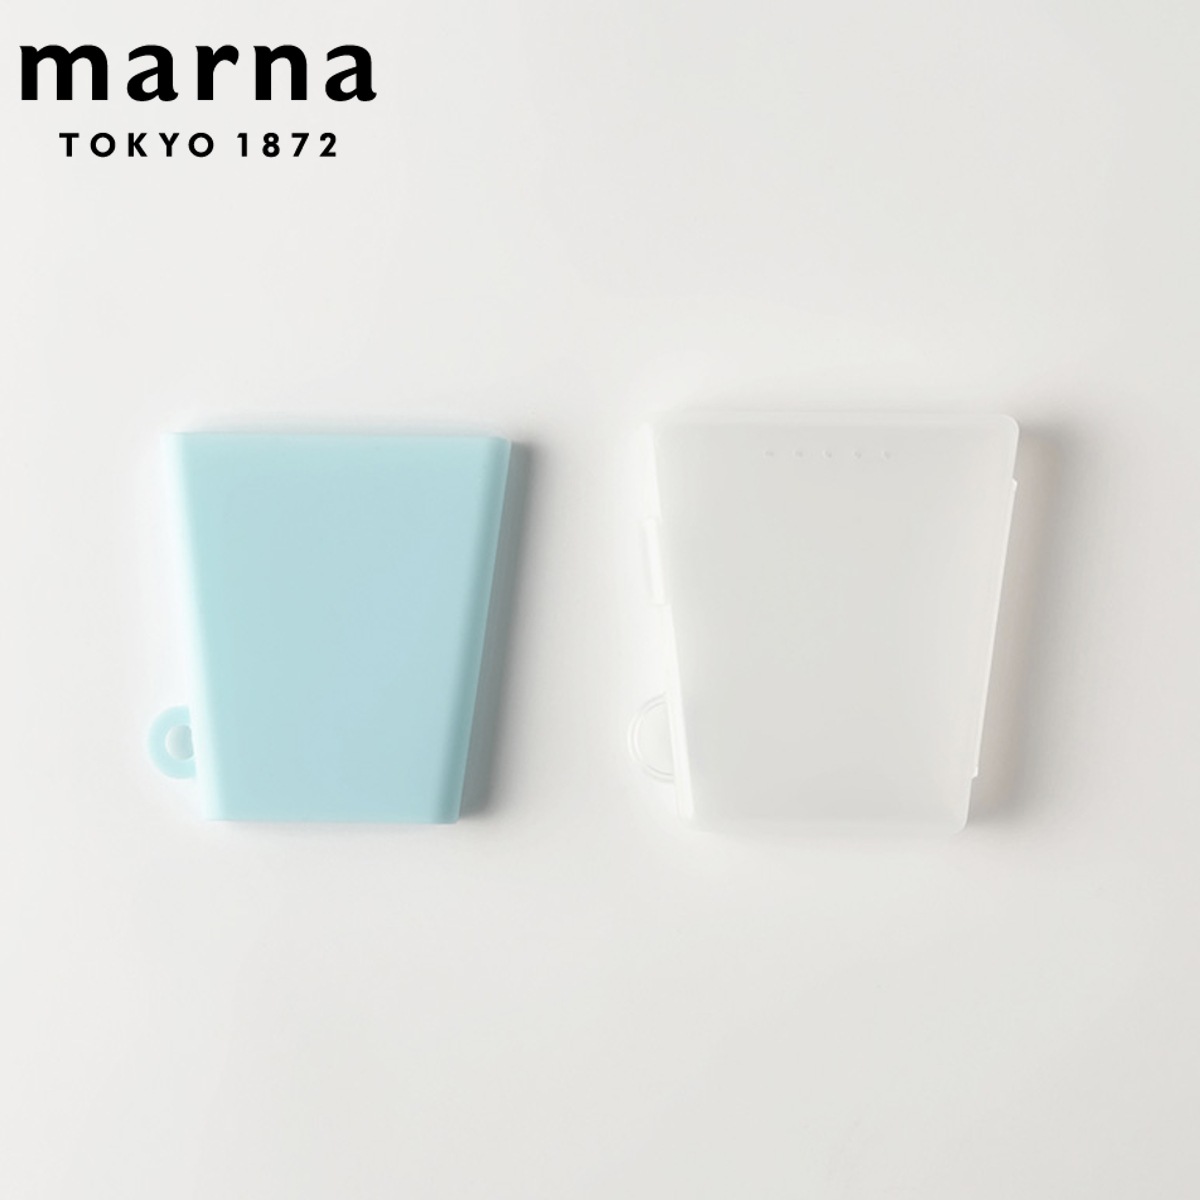 上質で快適 MARNA 歯磨き シリコンコップ 薬 非常時 携帯コップ 50ml 手洗いうがい うがい 薄い 携帯用コップ コップ 持ち運び 携帯 ケース付き ぺたんコップ うがいコップ マーナ 洗顔用品